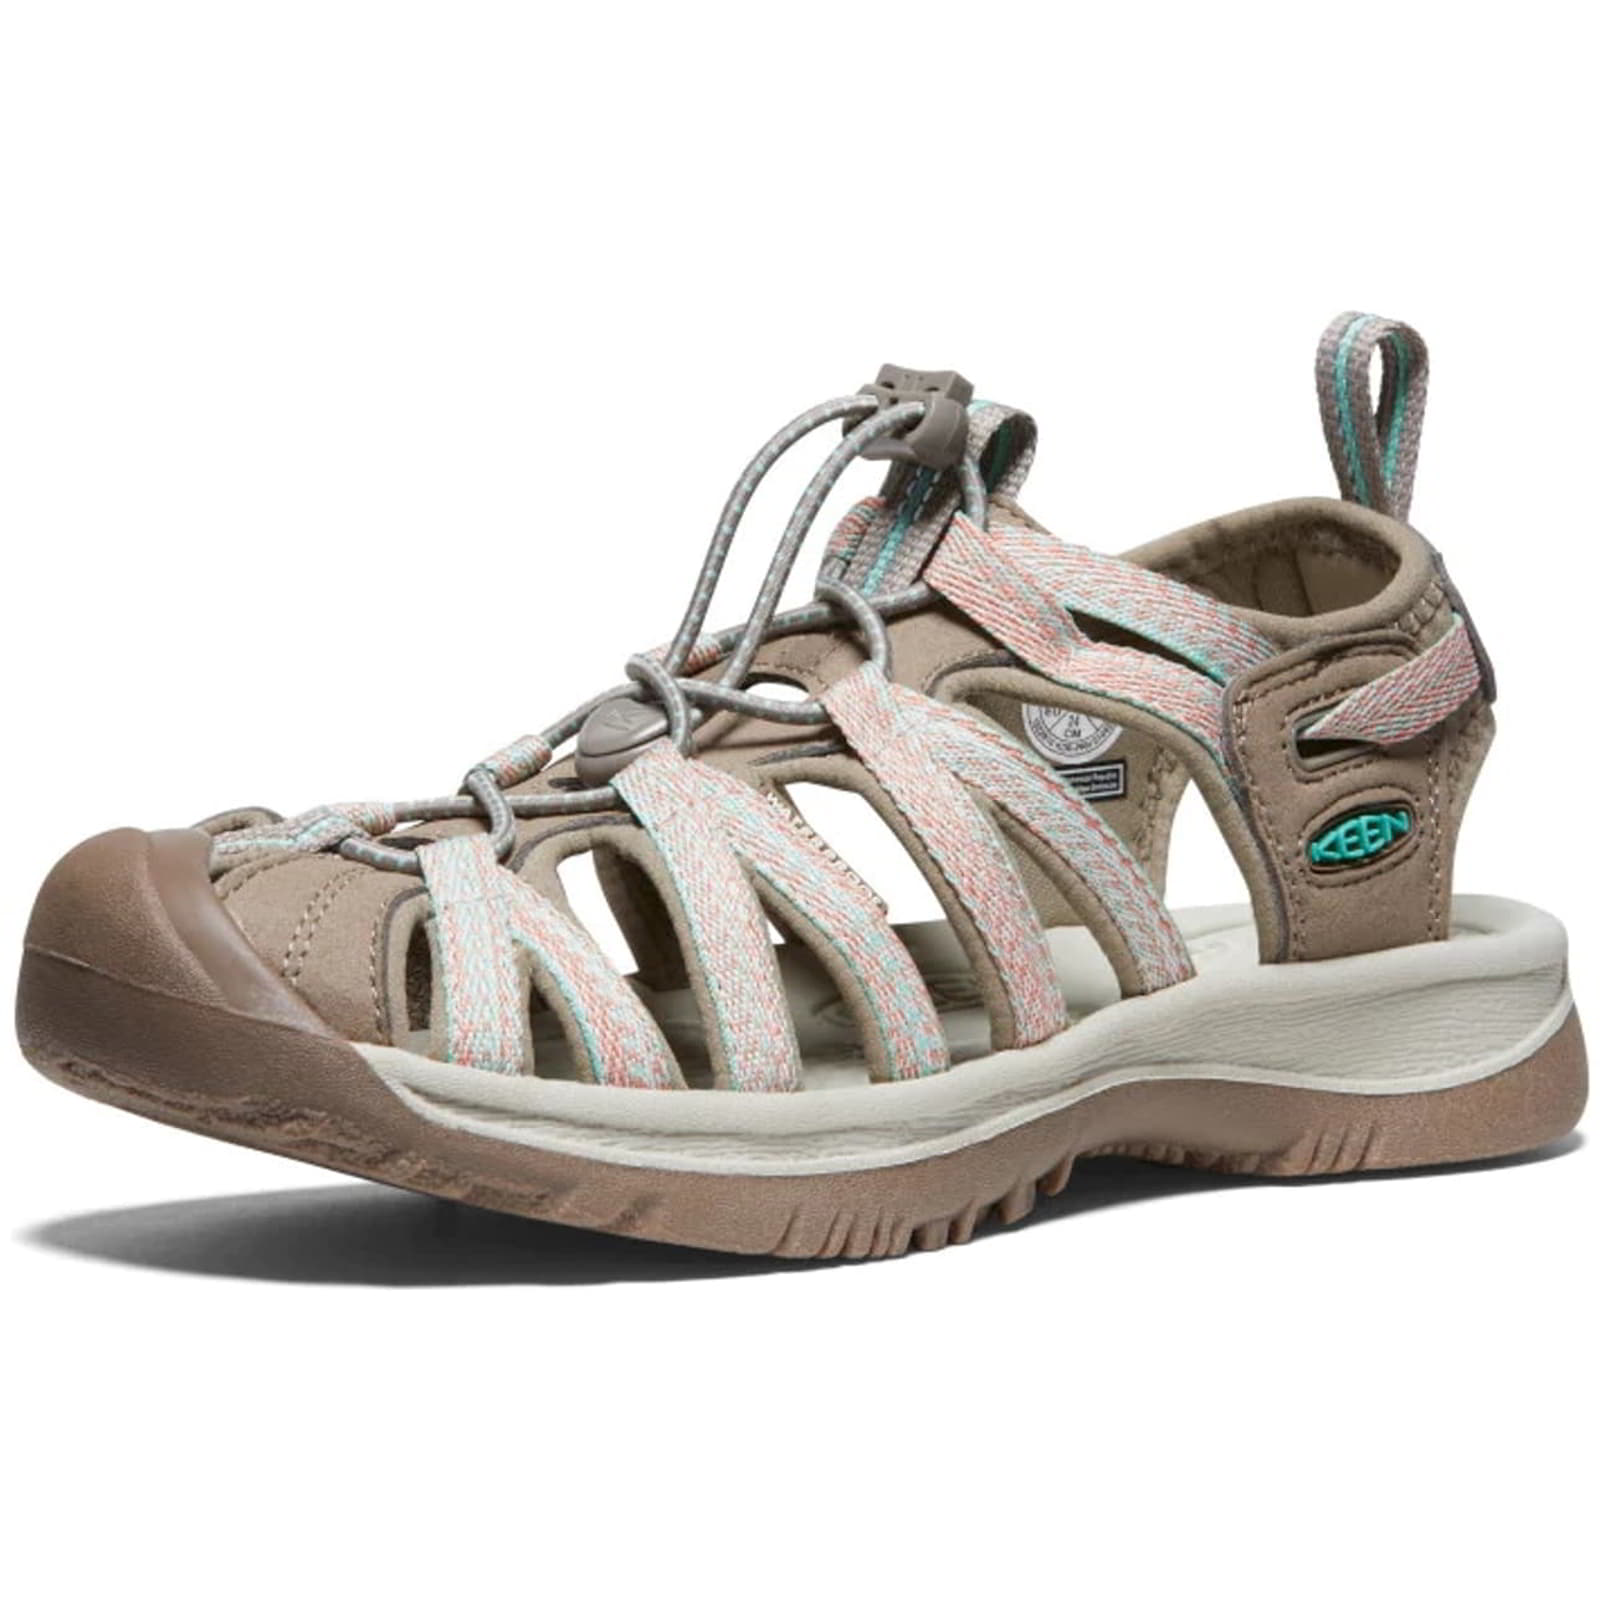 Keen Whisper Women's Waterproof Walking Hiking Sandals - UK 5 / 38 / US 7.5